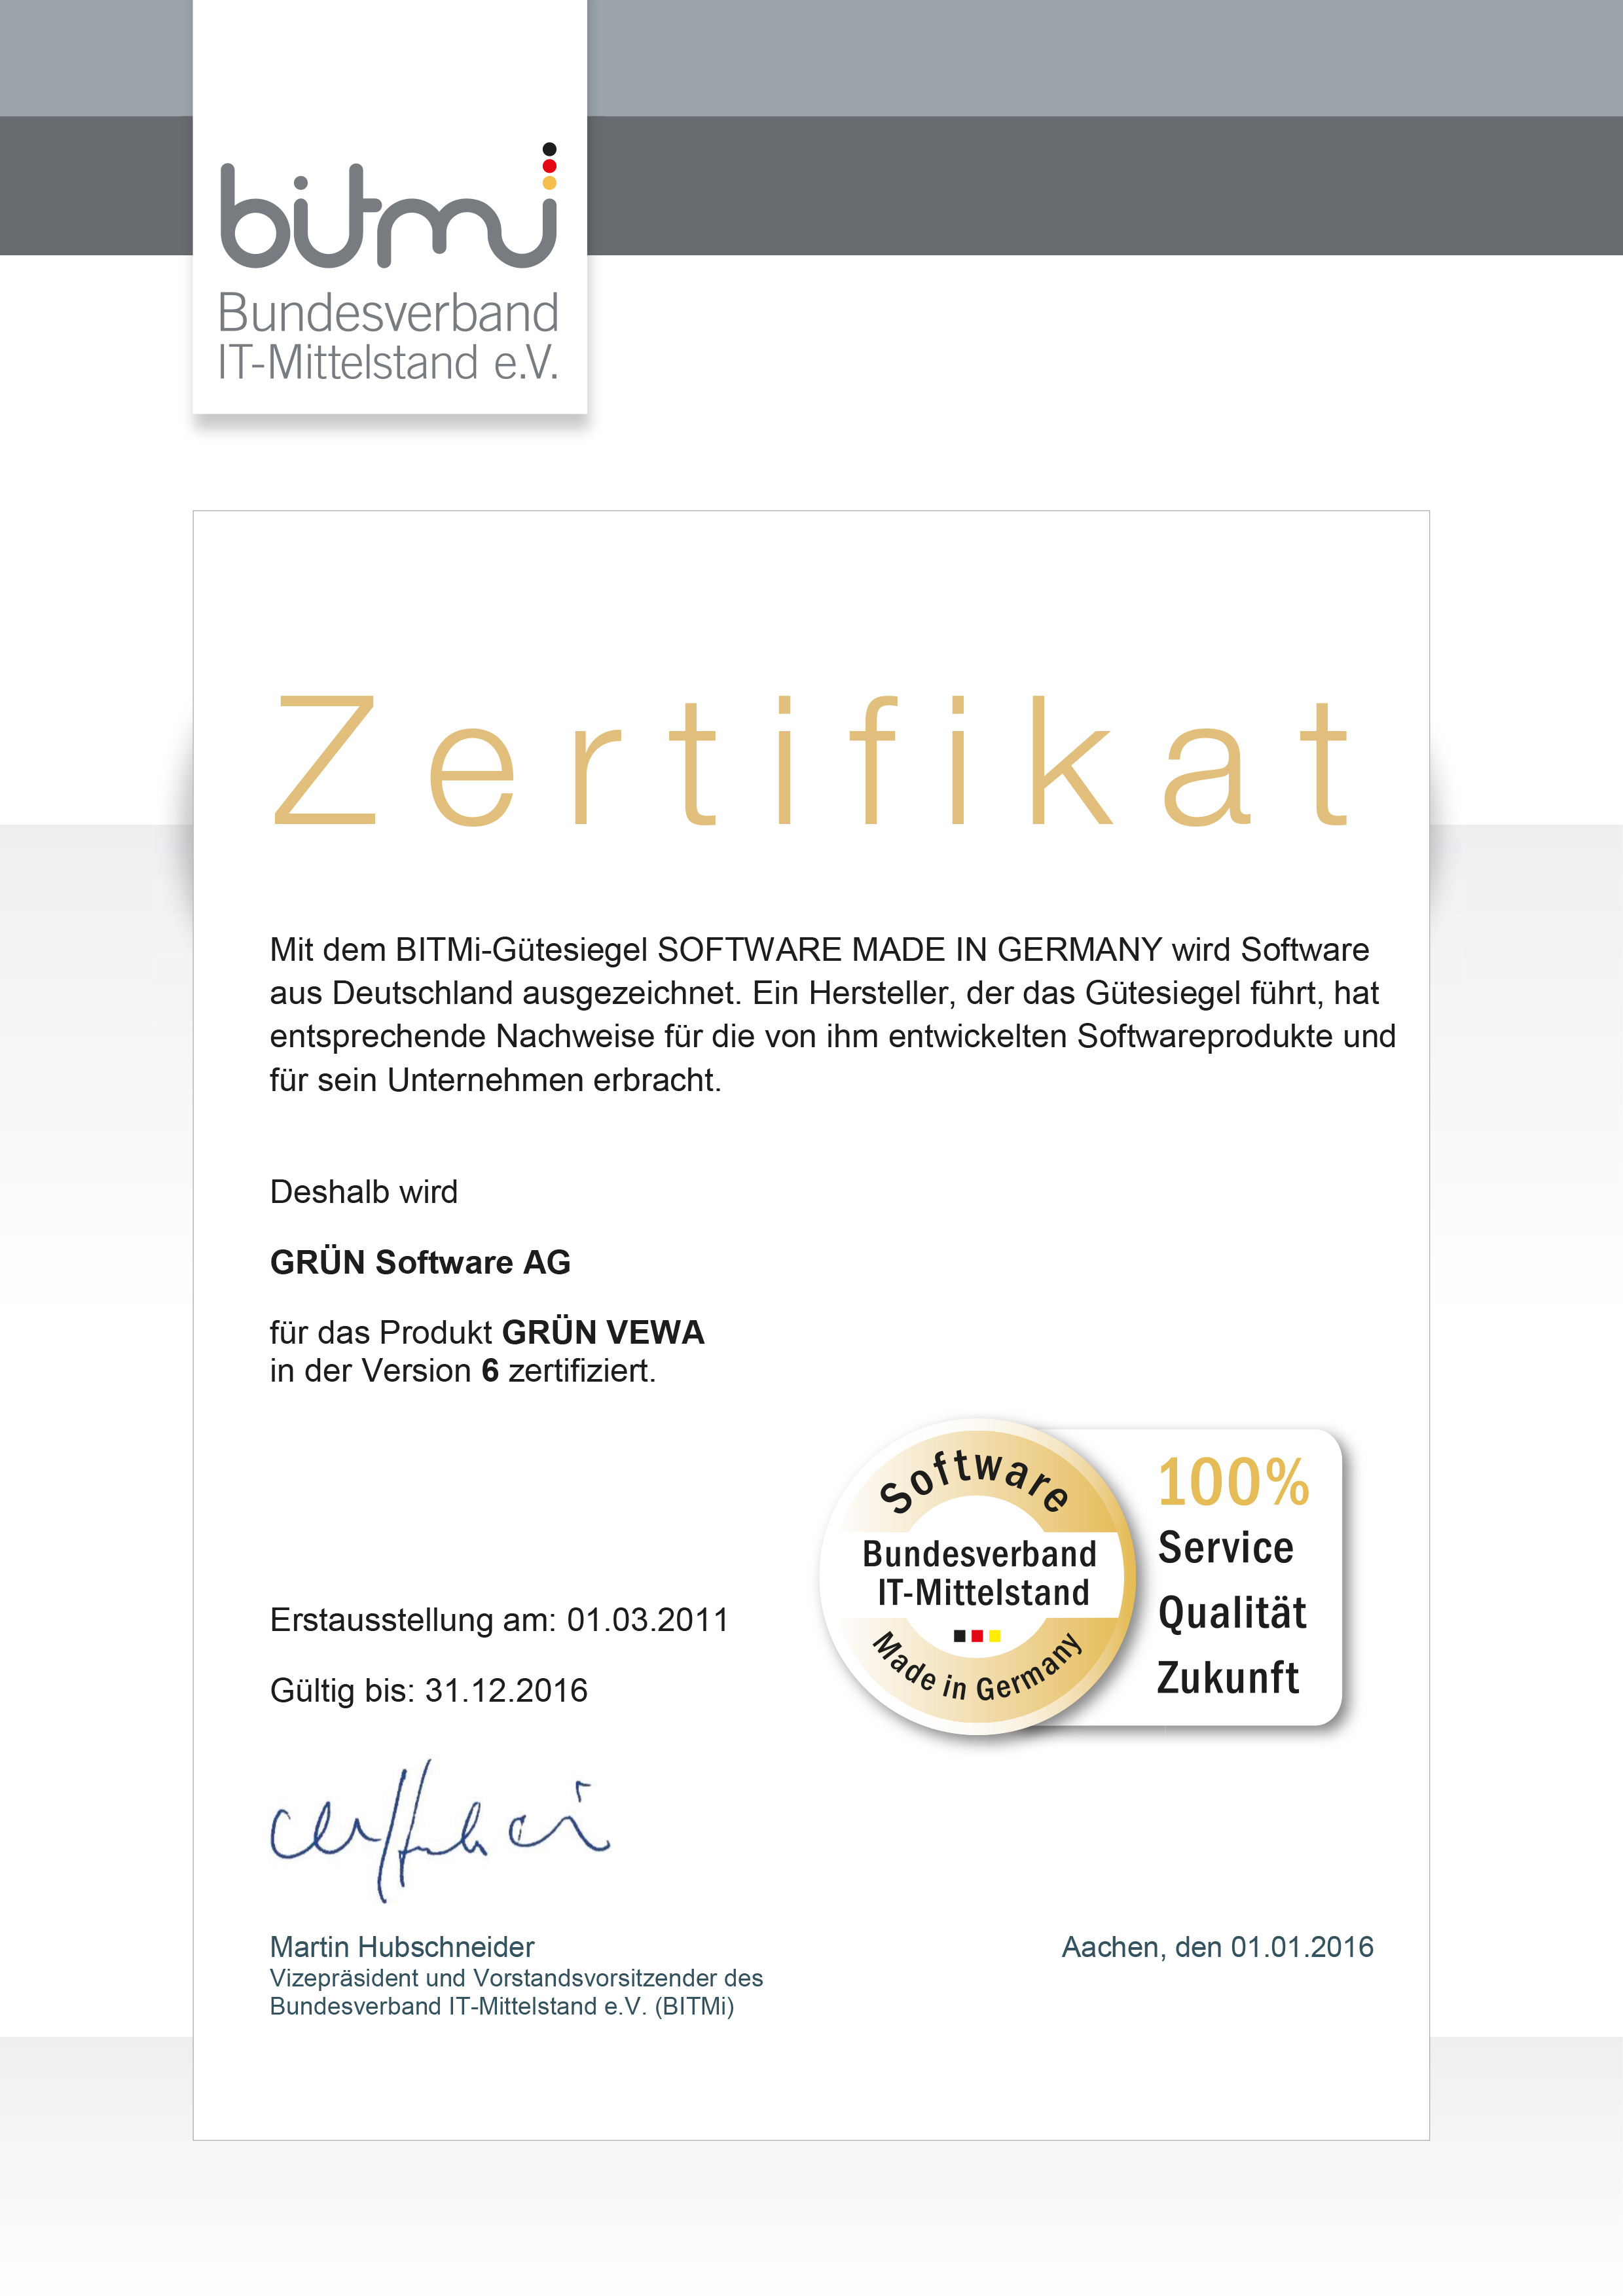 GRÜN VEWA vom BITMi als Software made in Germany zertifiziert.